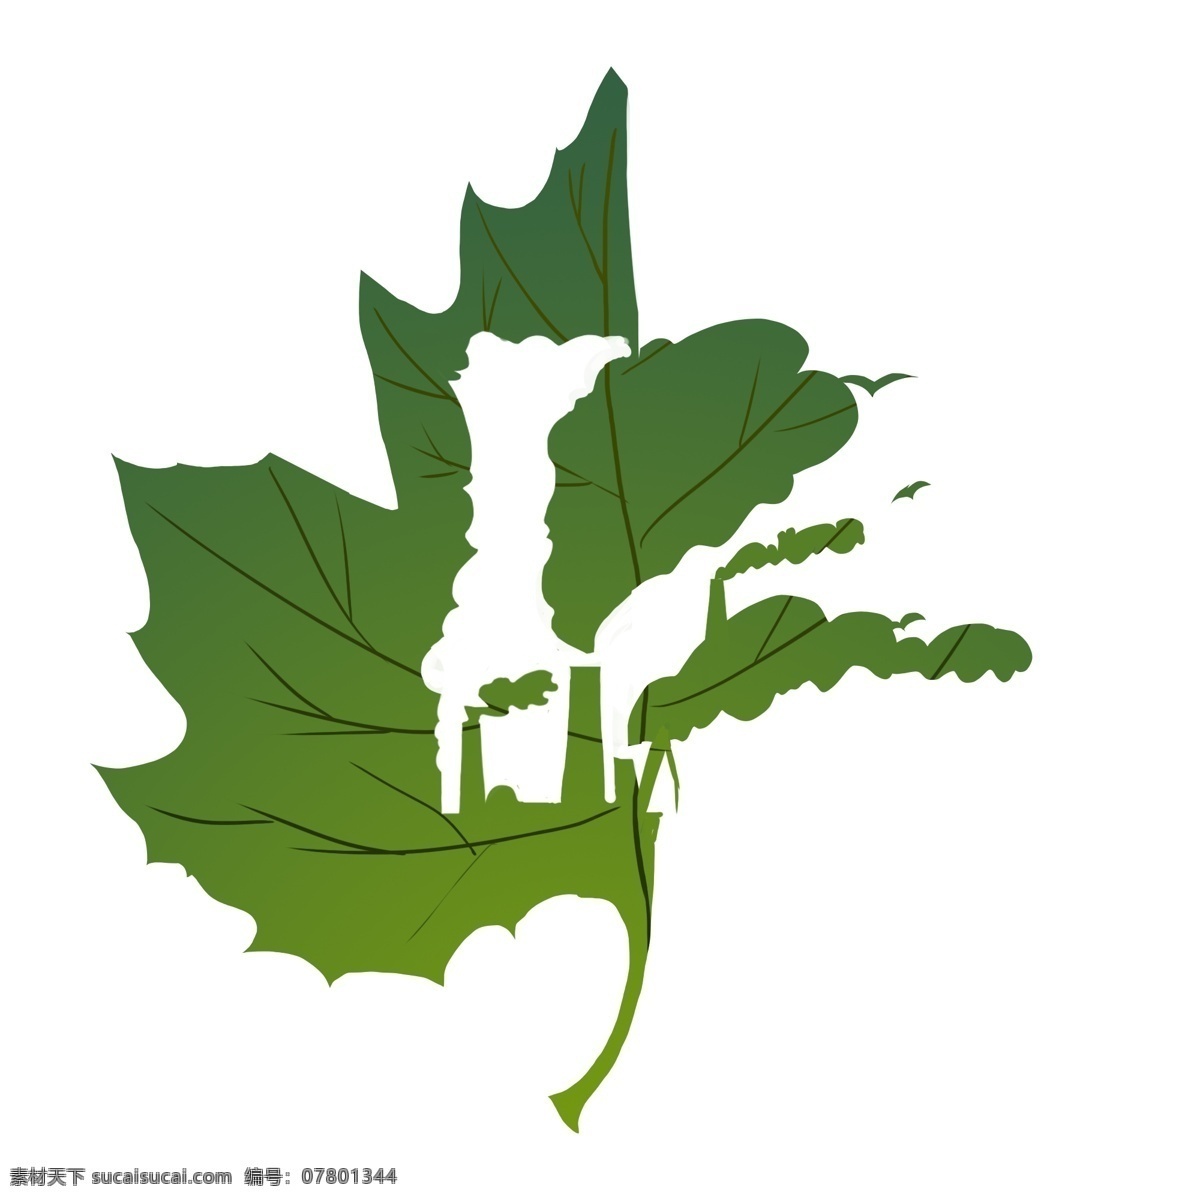 绿色 树叶 环保 创意 污染 生态 地球 环境 人人有责 人类发展 工厂排烟 明天